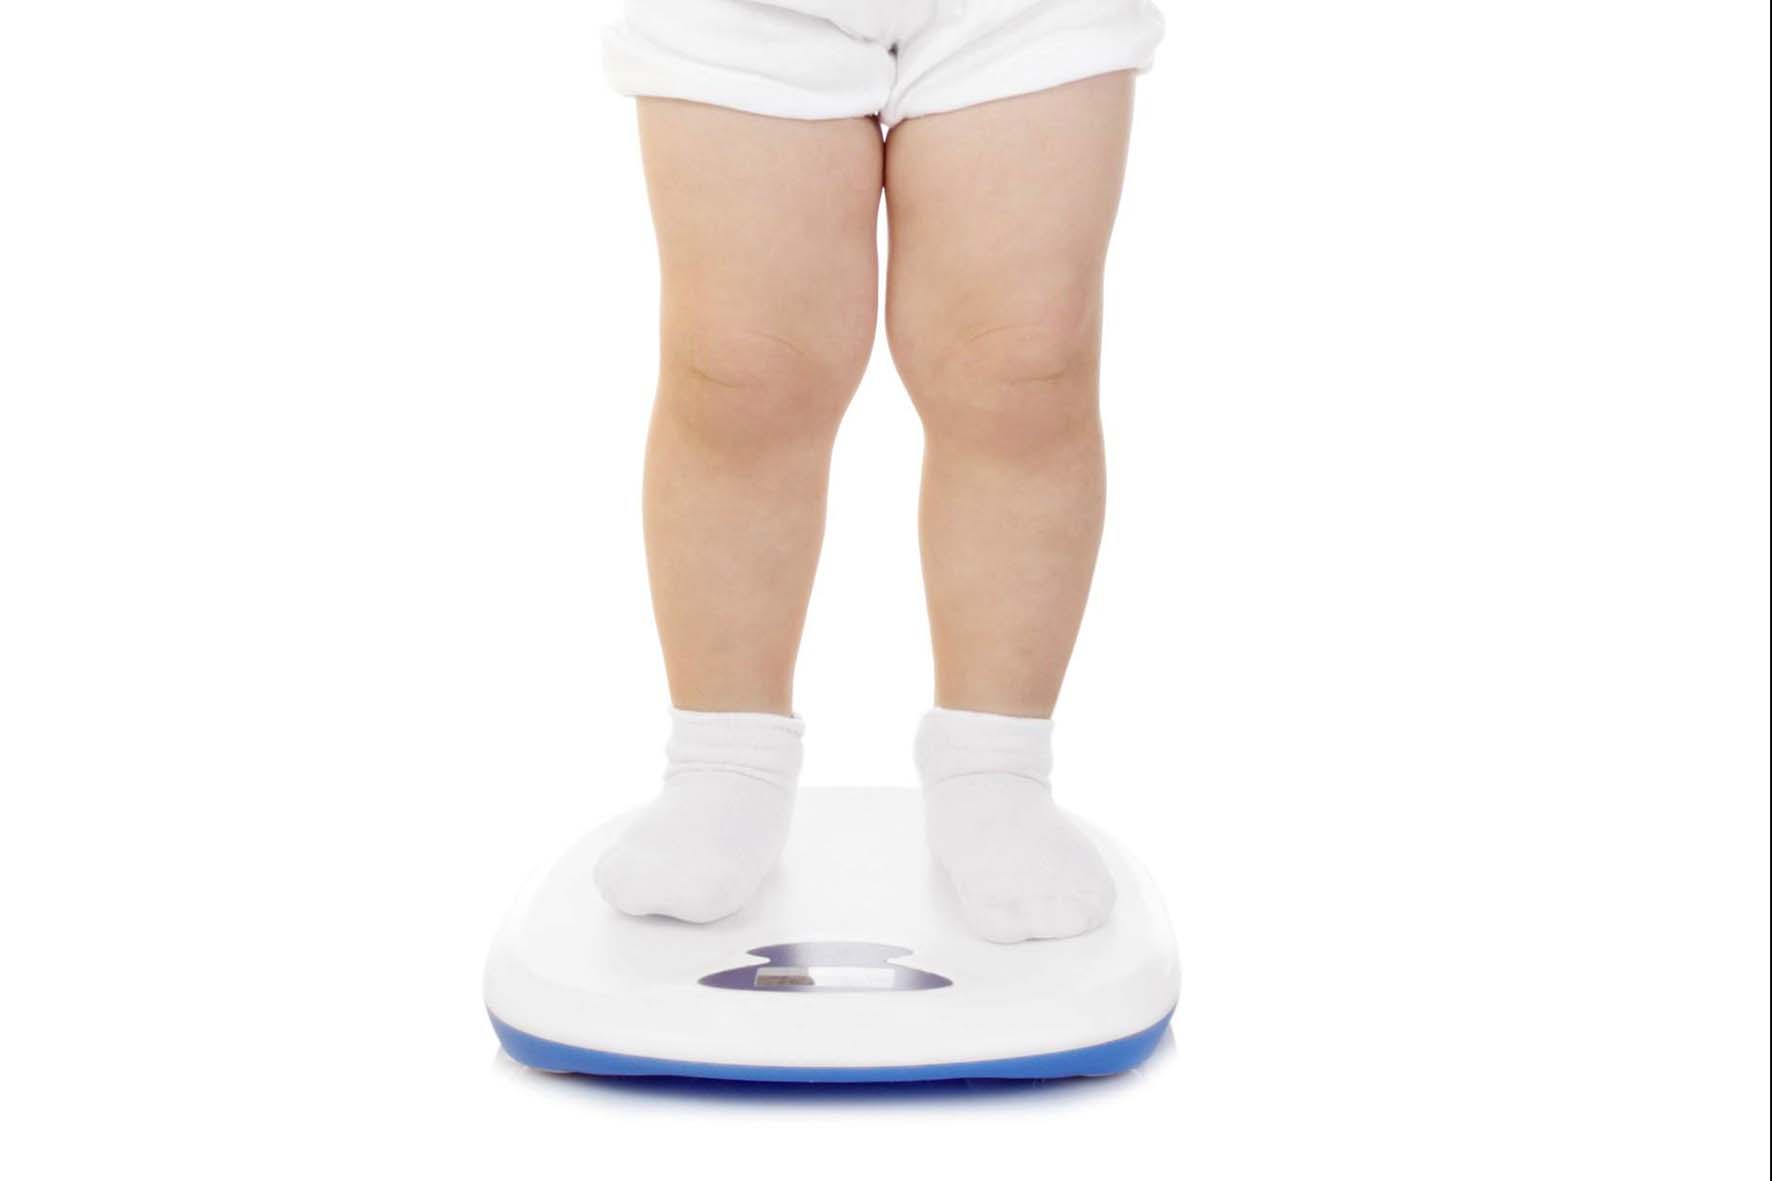 obesità infantile bimbo su bilancia